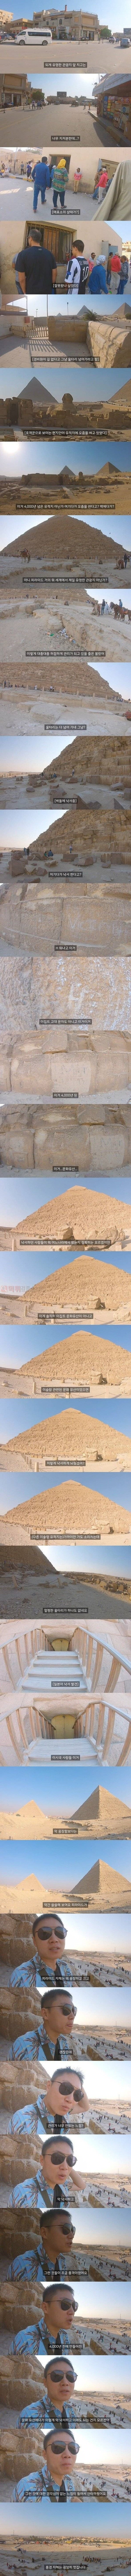 먹튀검증소 유머 이집트 피라미드 근황